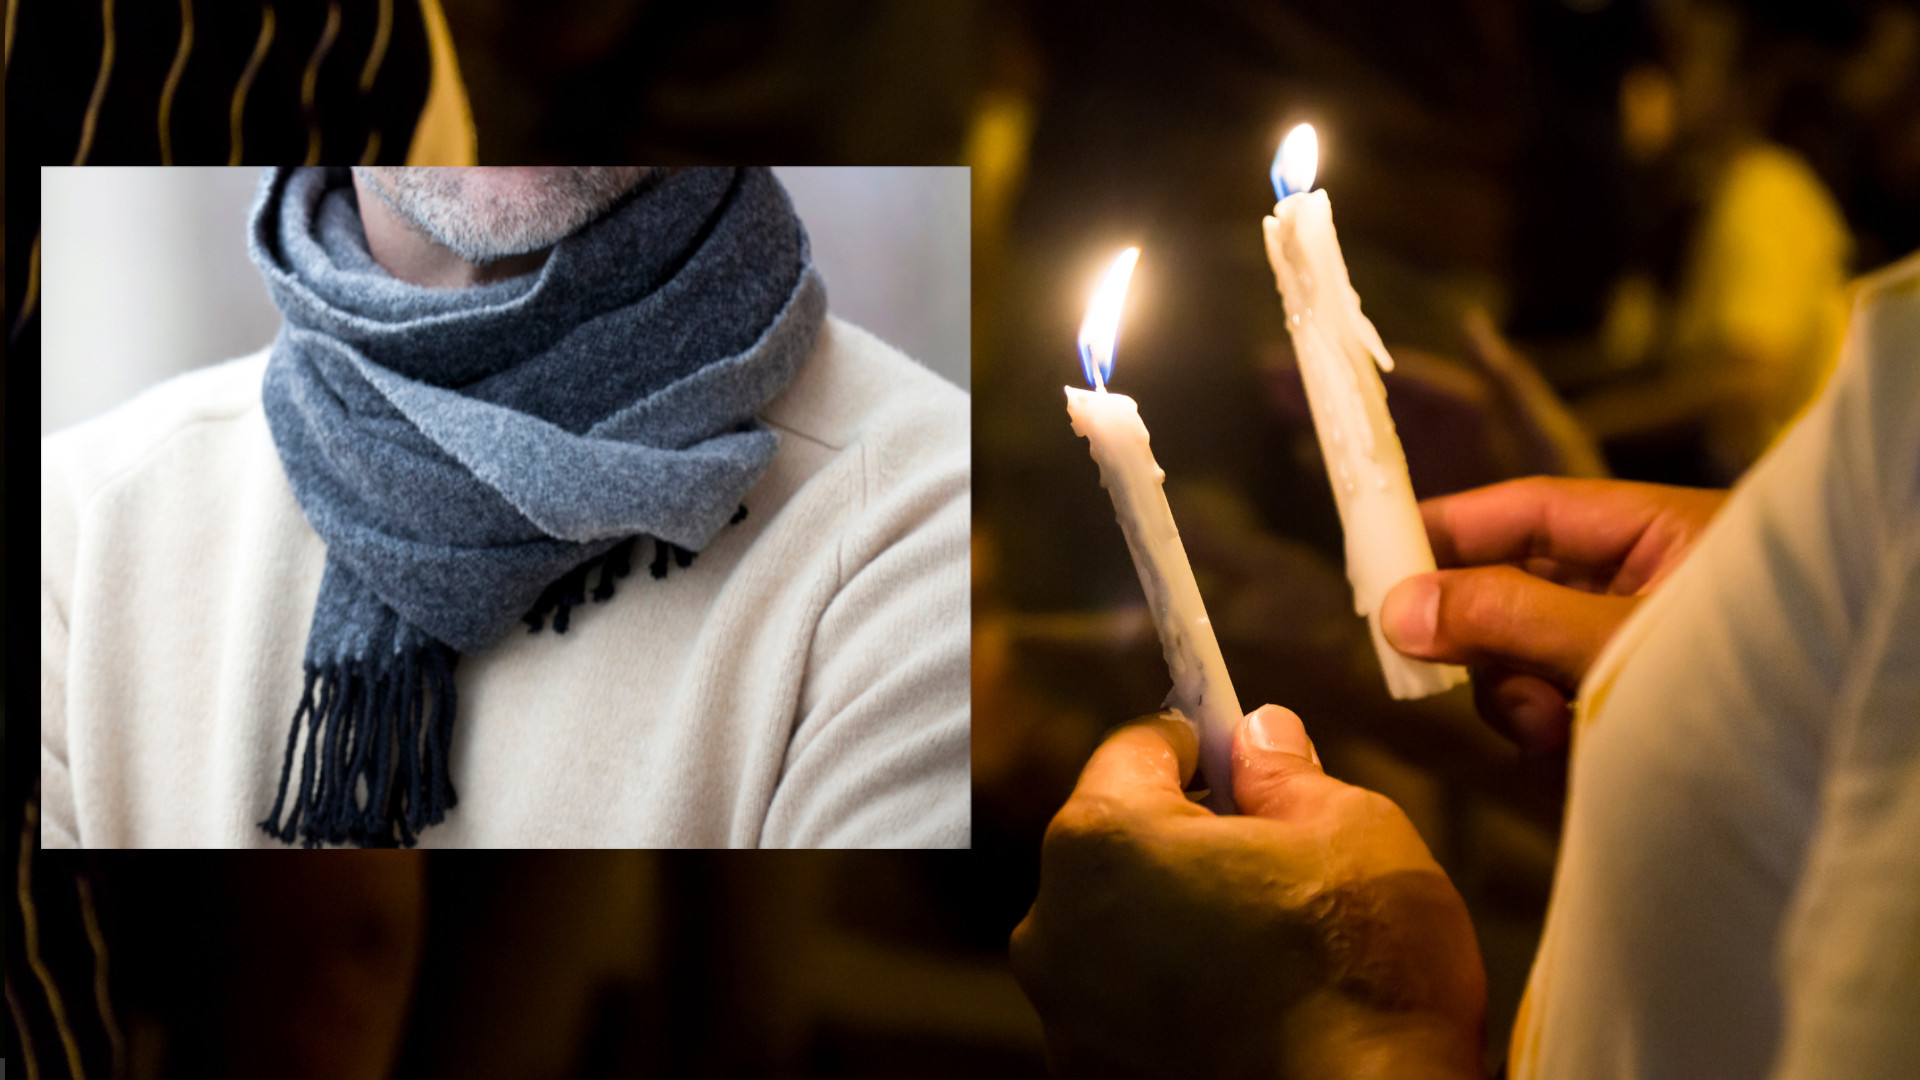 Vigil for man's scarf